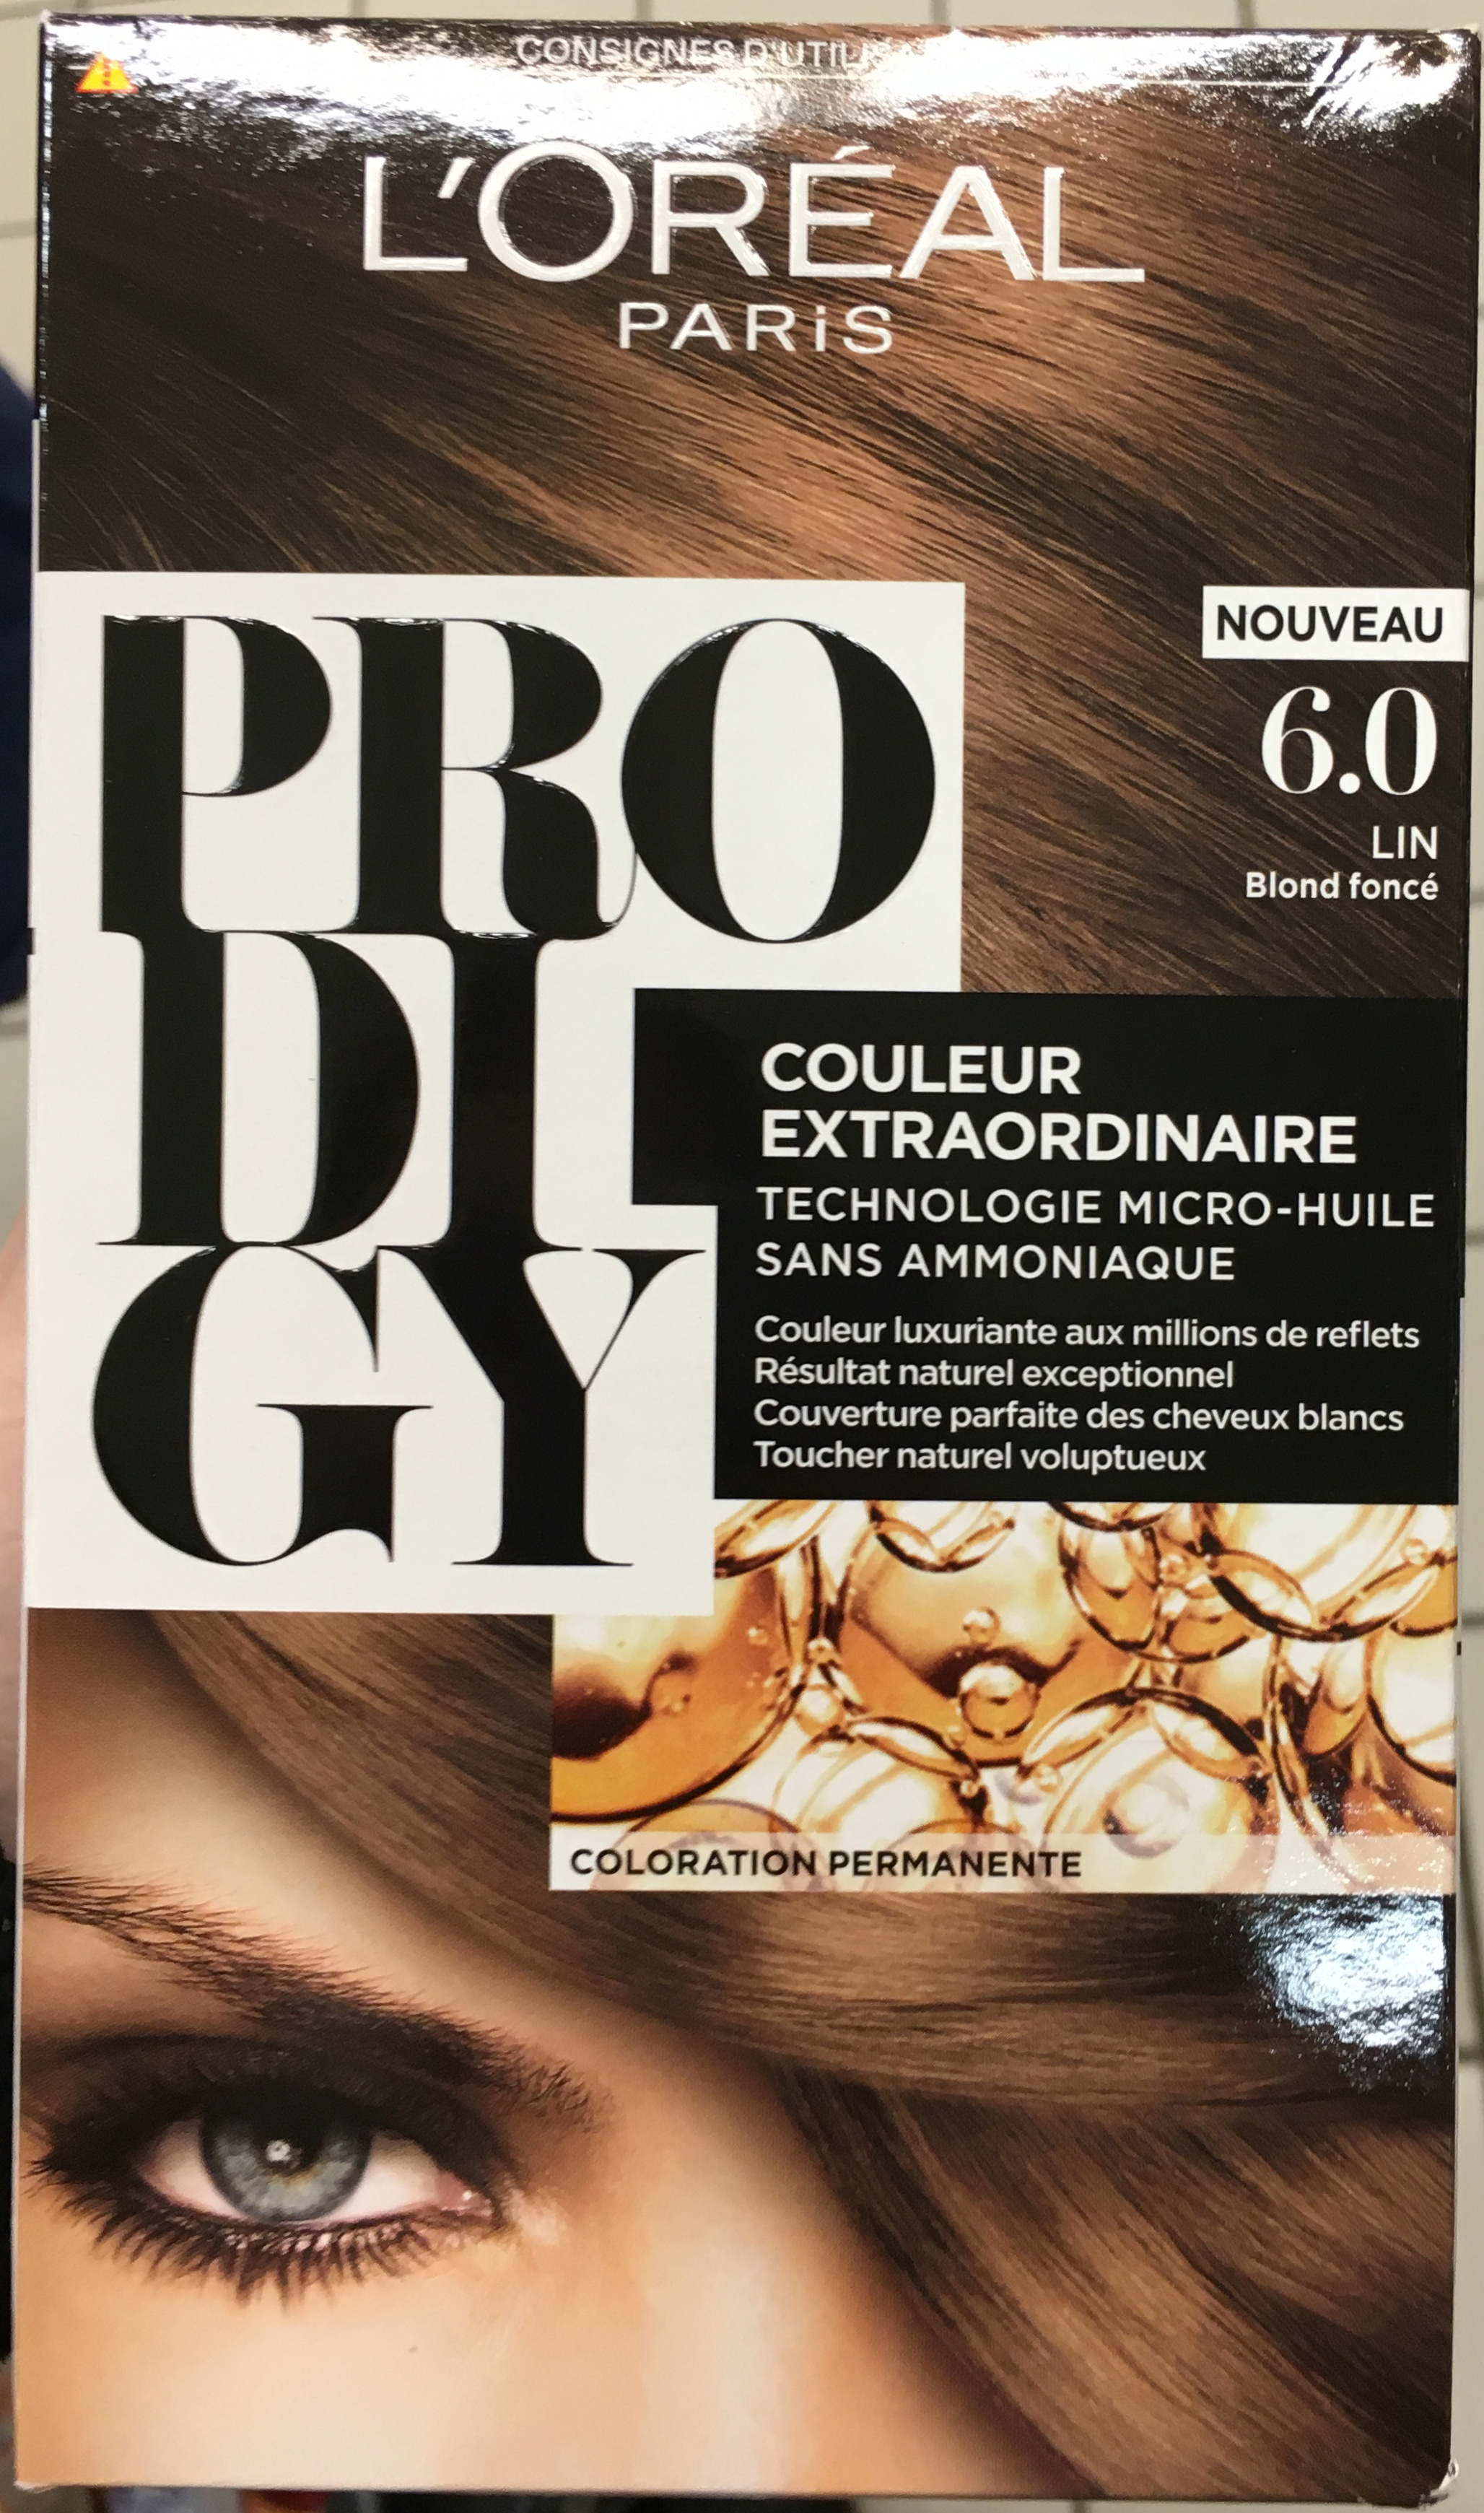 PRODIGY 6.0 LIN Blond foncé - Product - fr